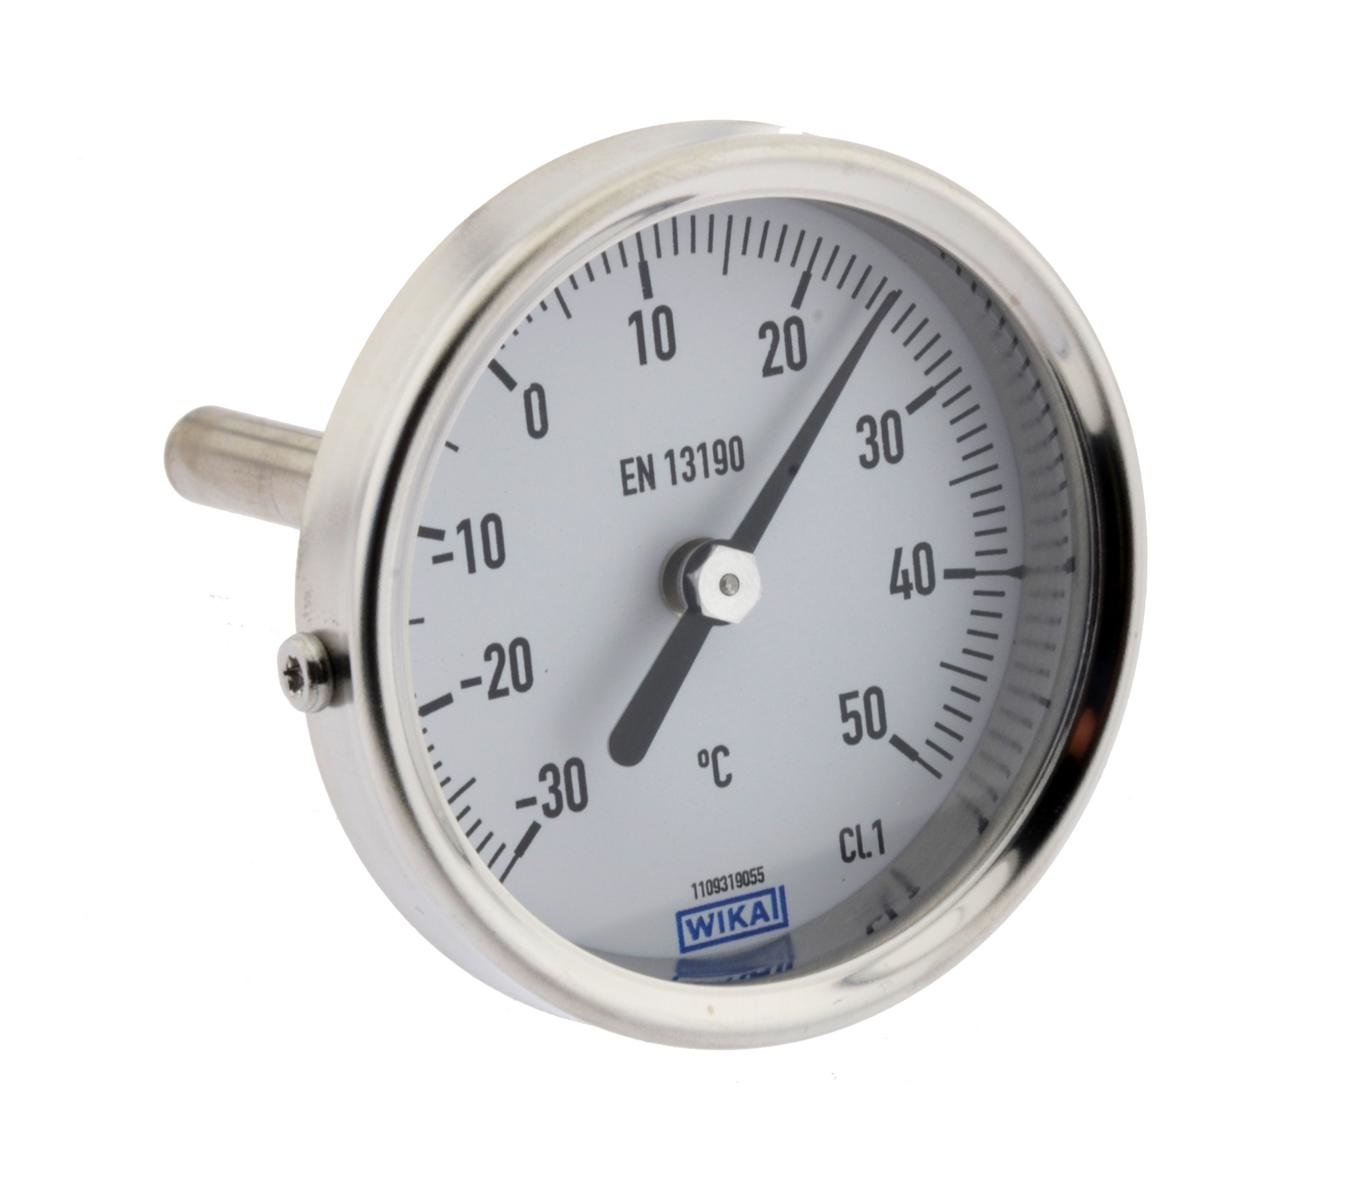 Bimetall-Anlegethermometer - Ø 63mm Anzeige 0 bis 60 °C